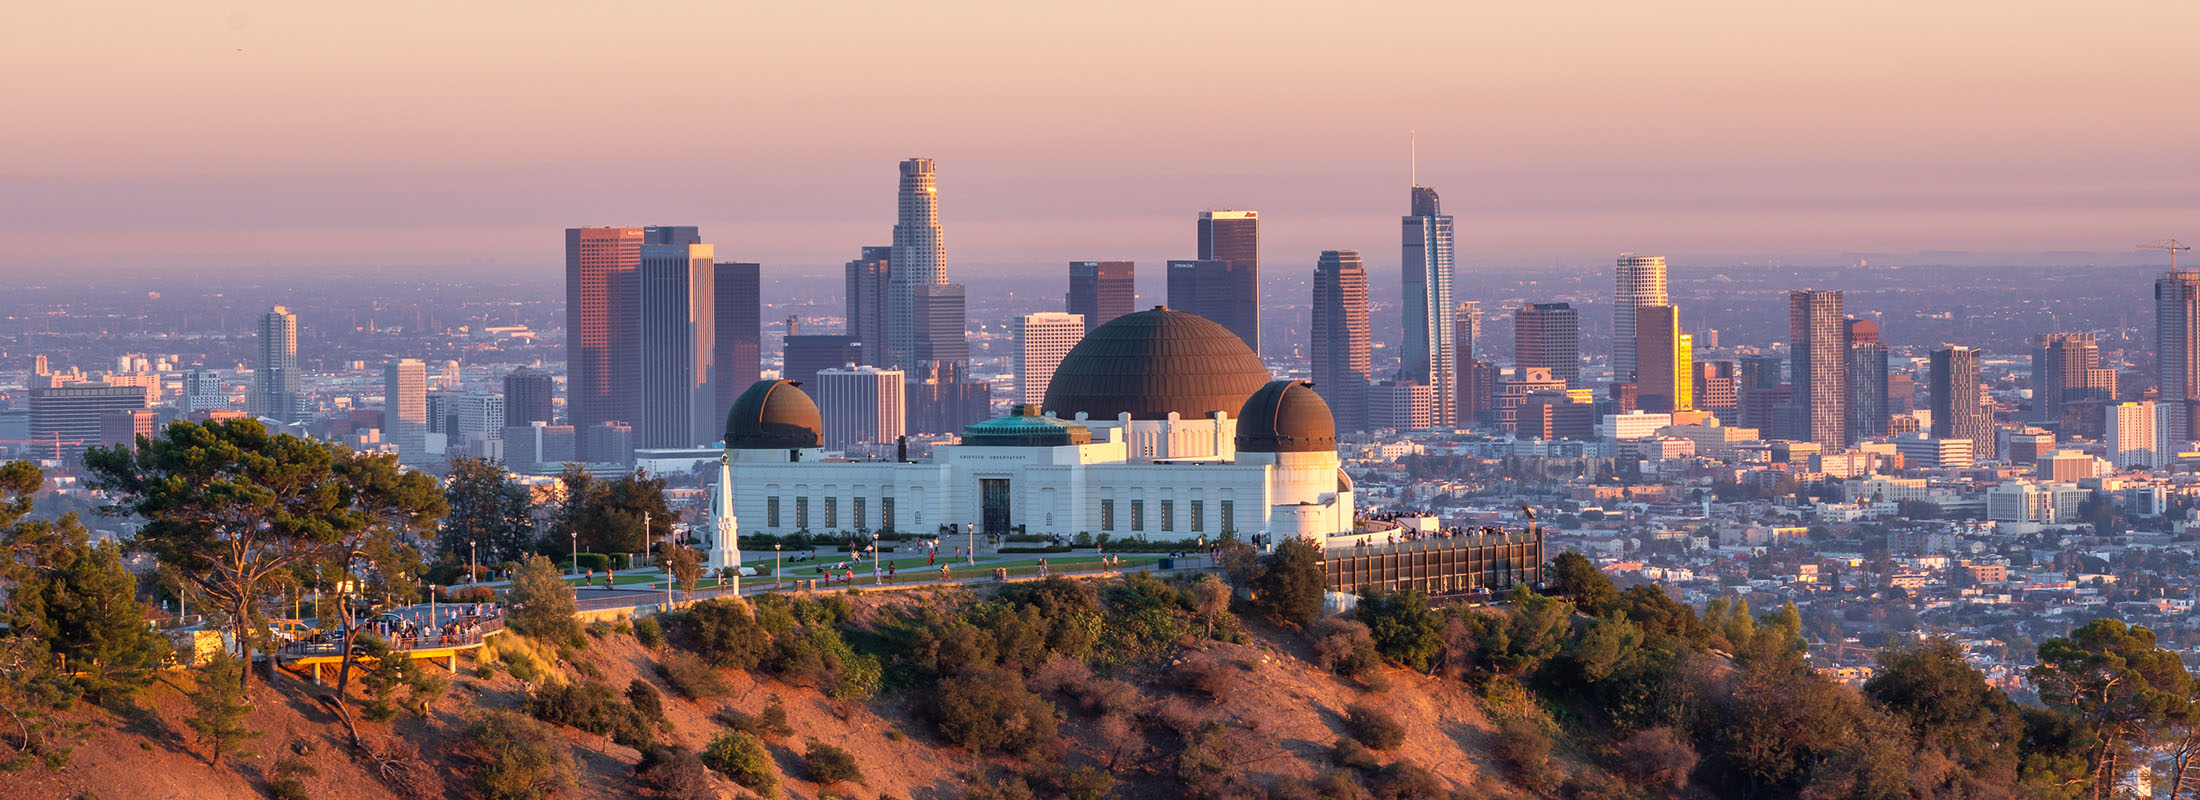 从附近山上欣赏到的Los Angeles天际线景观